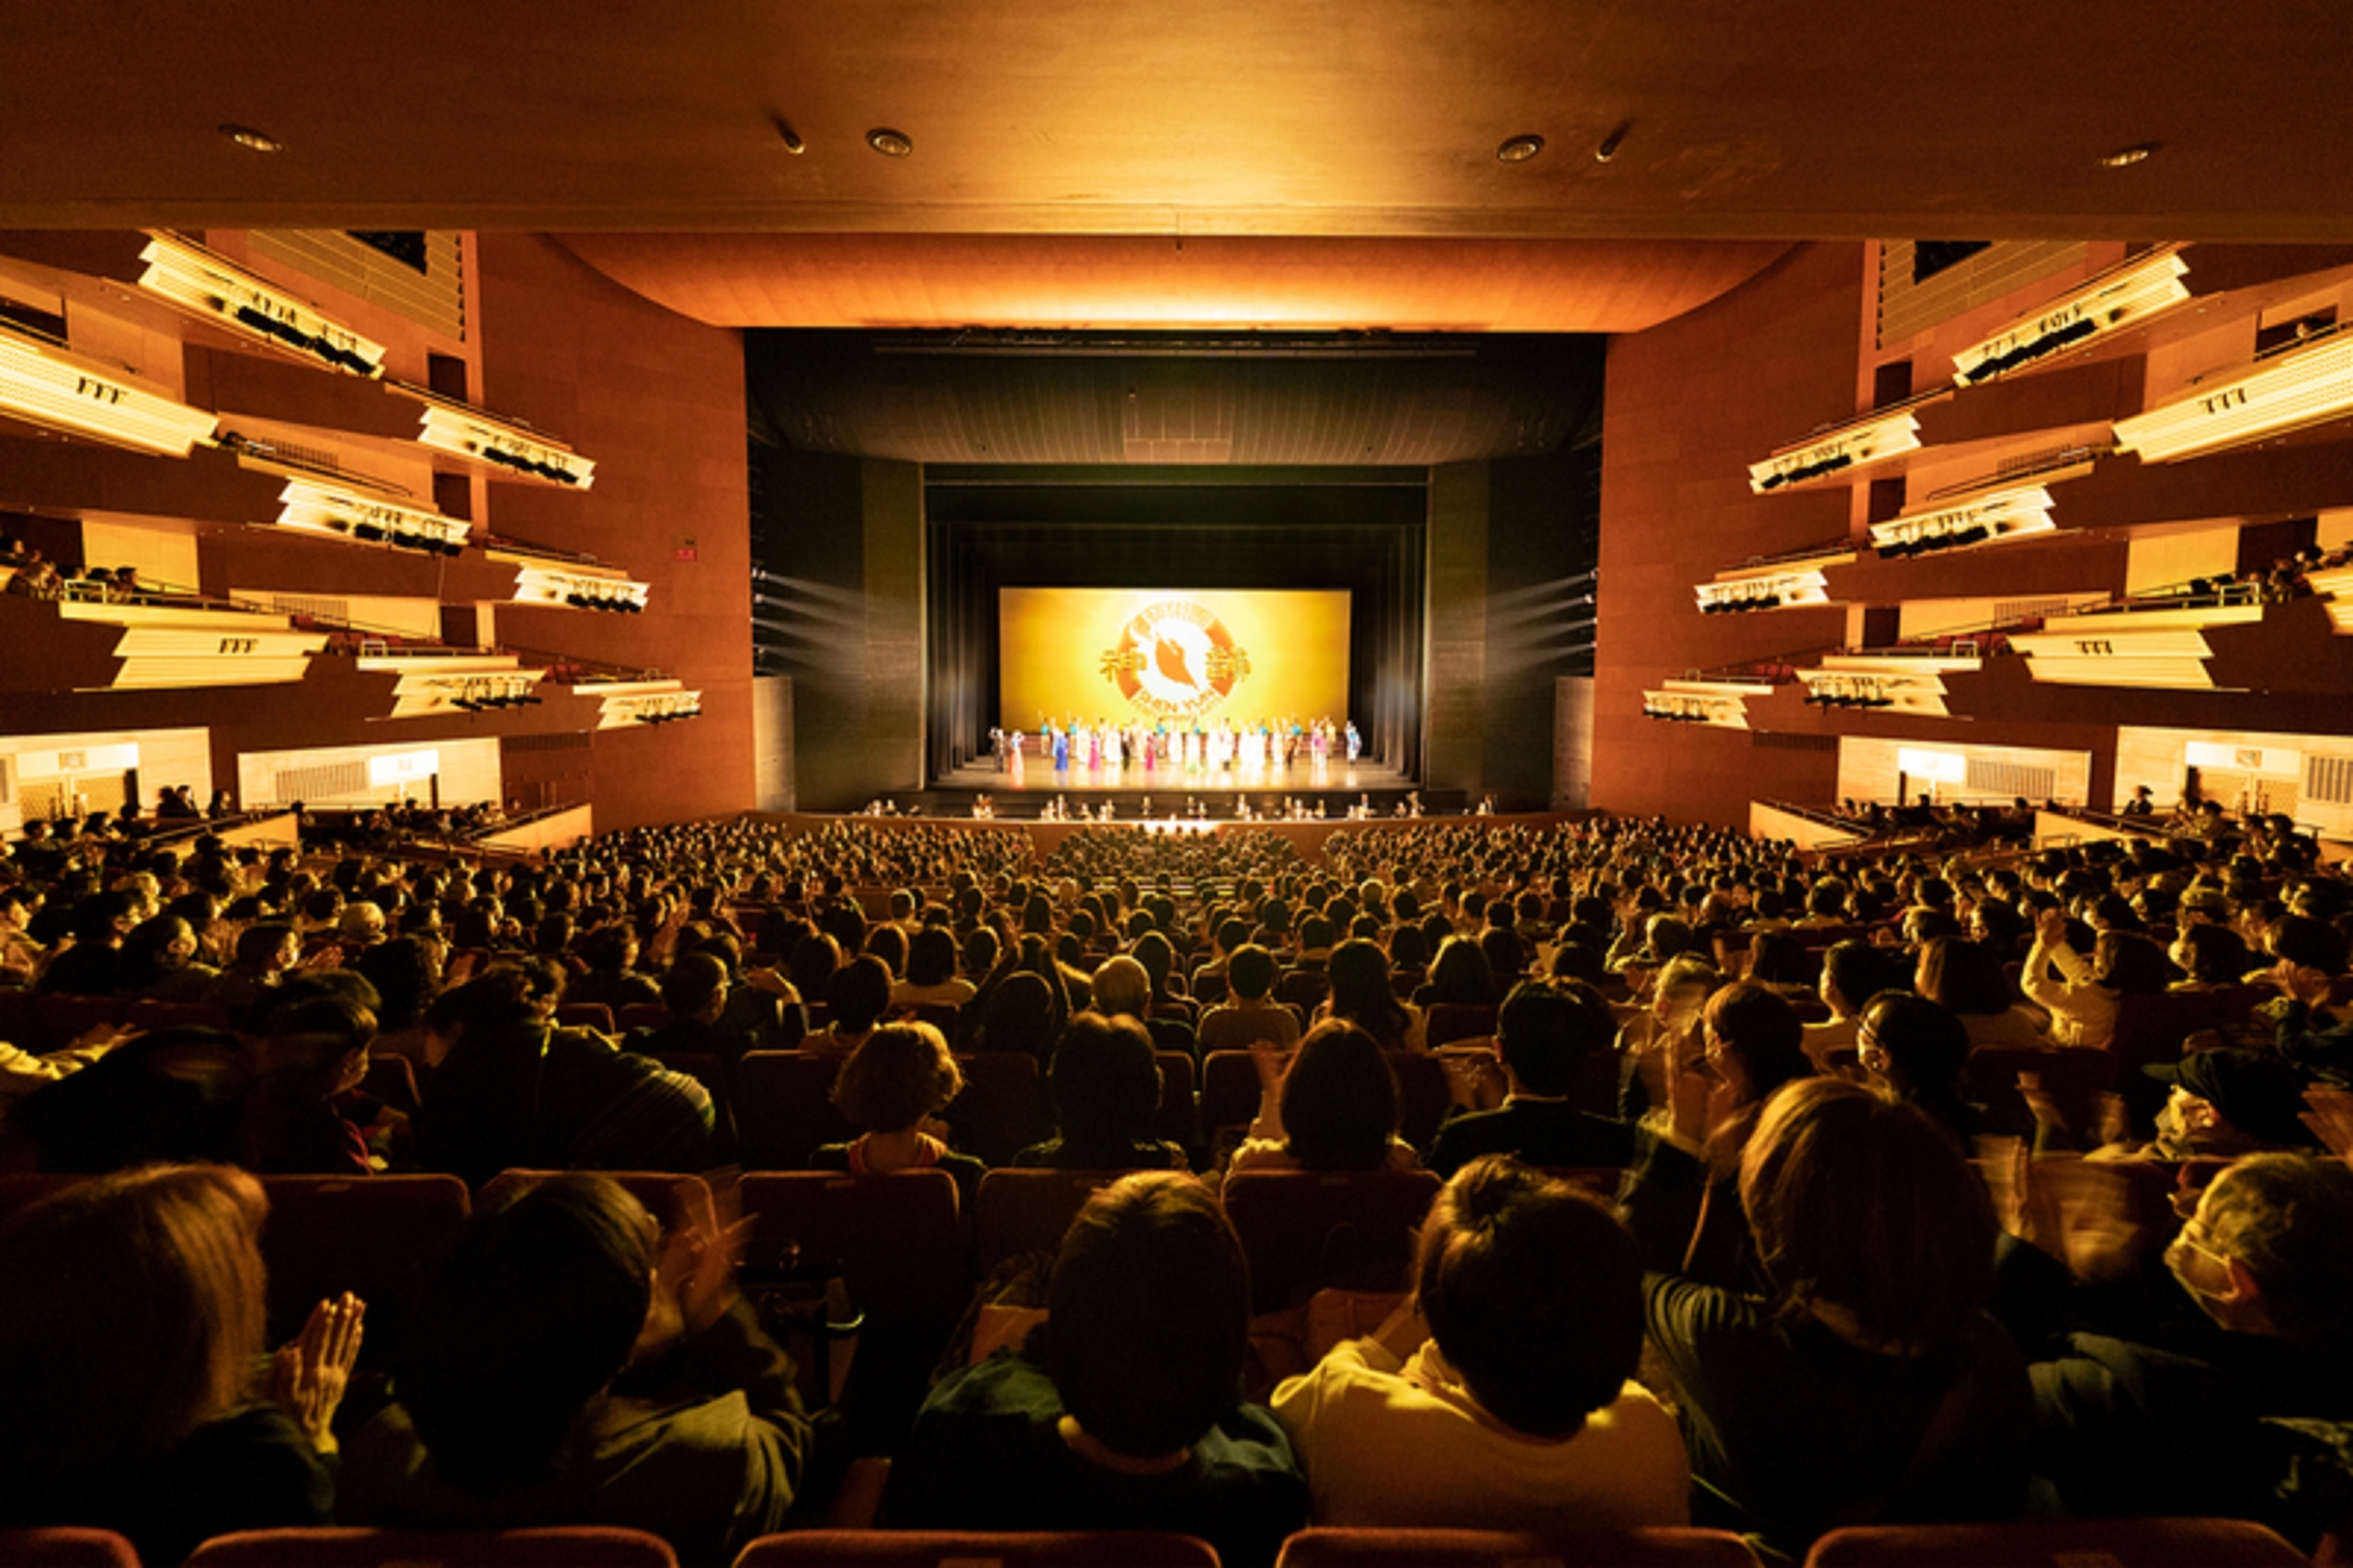 Đoàn Nghệ thuật Biểu diễn Shen Yun Thế giới chào khán giả trước khi hạ màn tại Nhà hát Nghệ thuật Tỉnh Aichi ở Nagoya, Nhật Bản, vào chiều ngày 29/01/2023. (Ảnh: Fujino Takeshi/The Epoch Times)